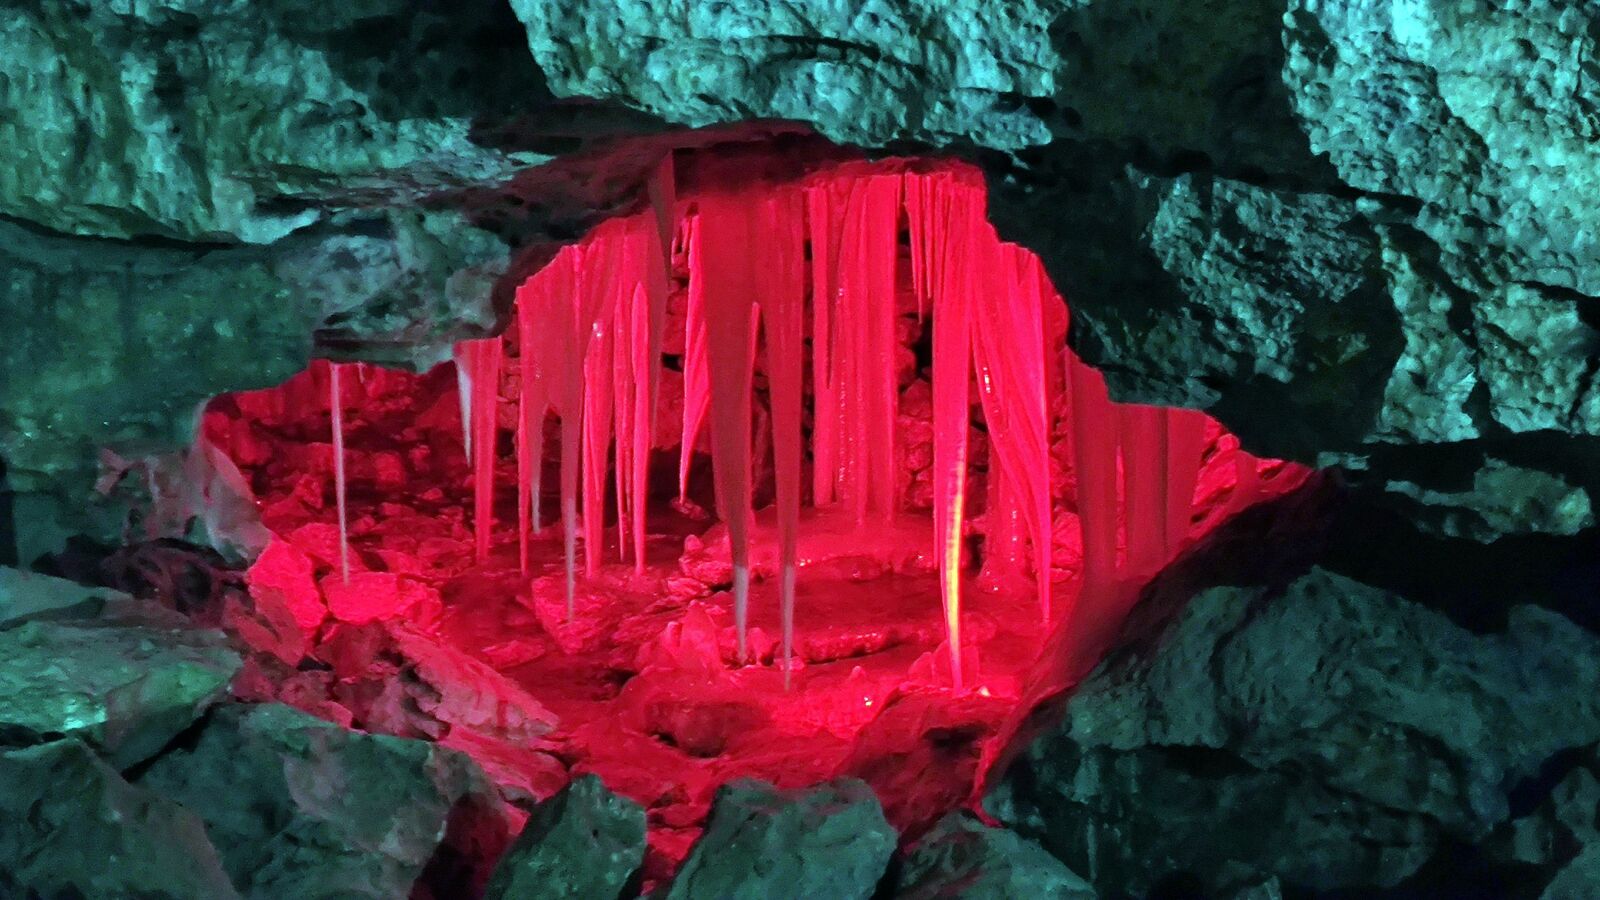 Пещера удивляла своим разнообразием и великолепием. Фото из архива Риммы Сафиуллиной.